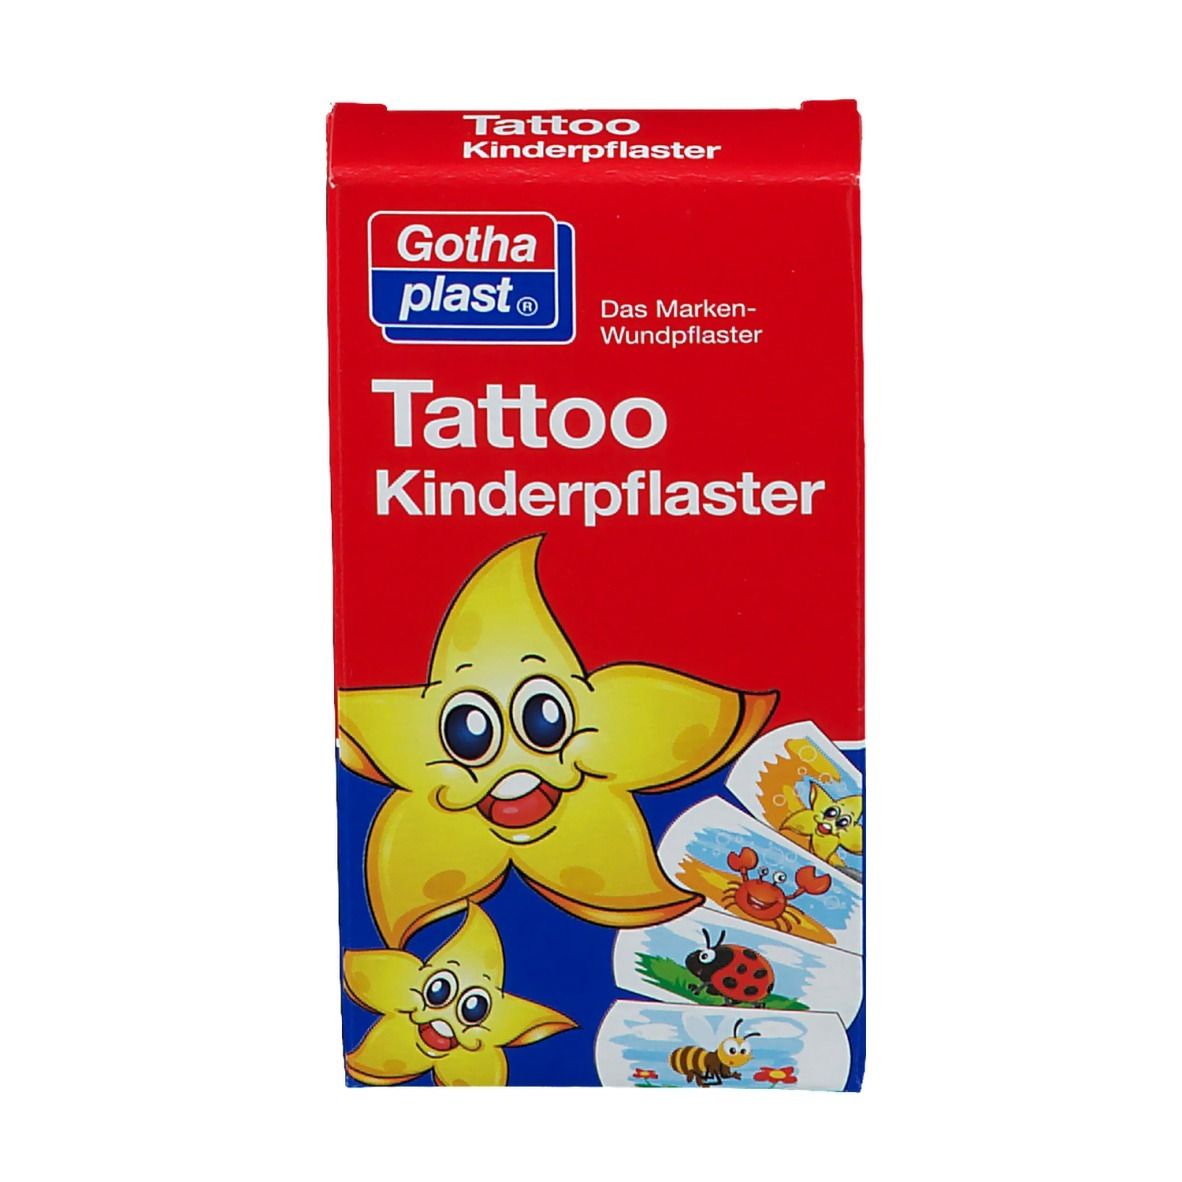 Gothaplast® Tattoo Kinderpflaster